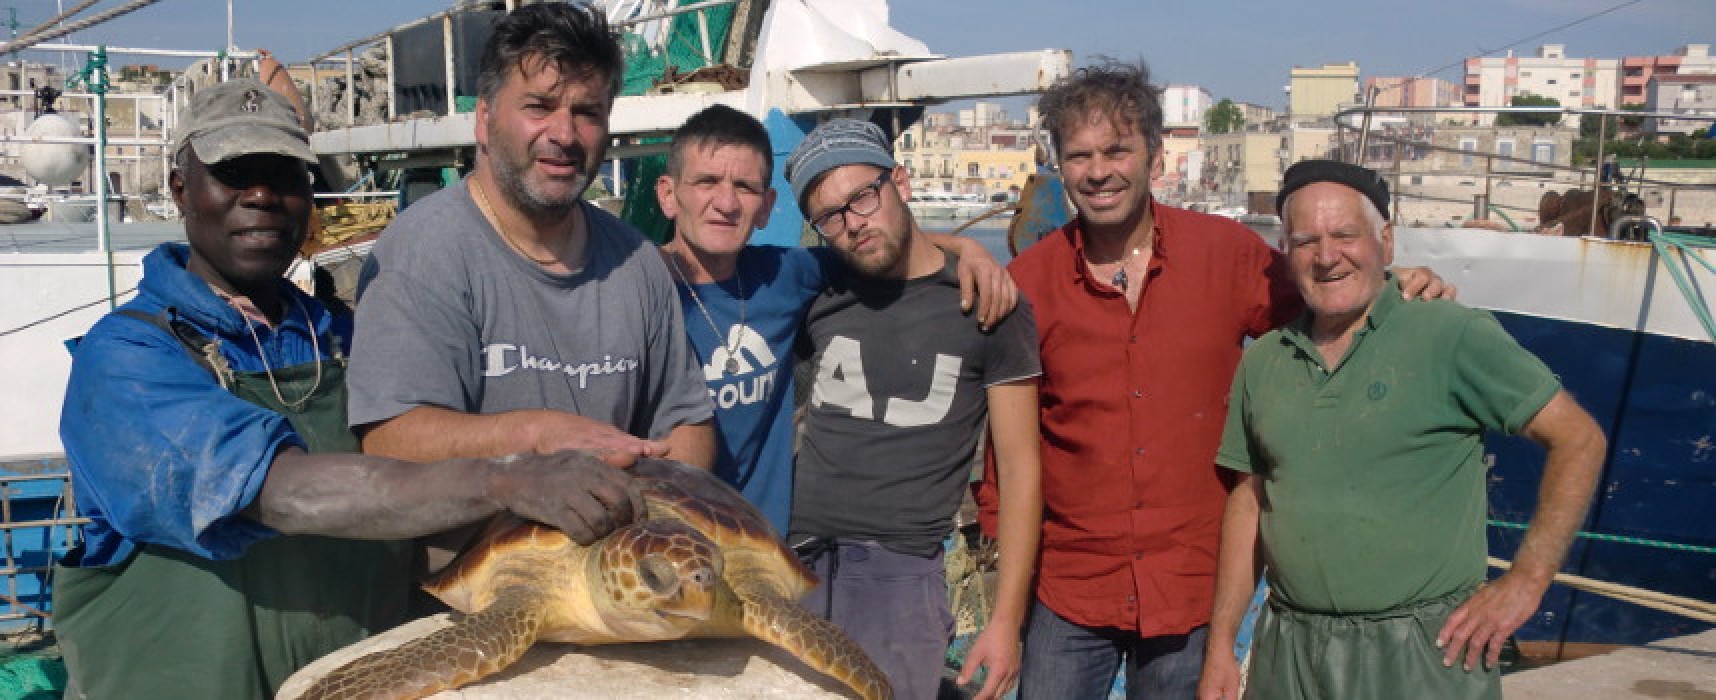 Salvata una tartaruga marina al largo della costa tra Trani e Bisceglie